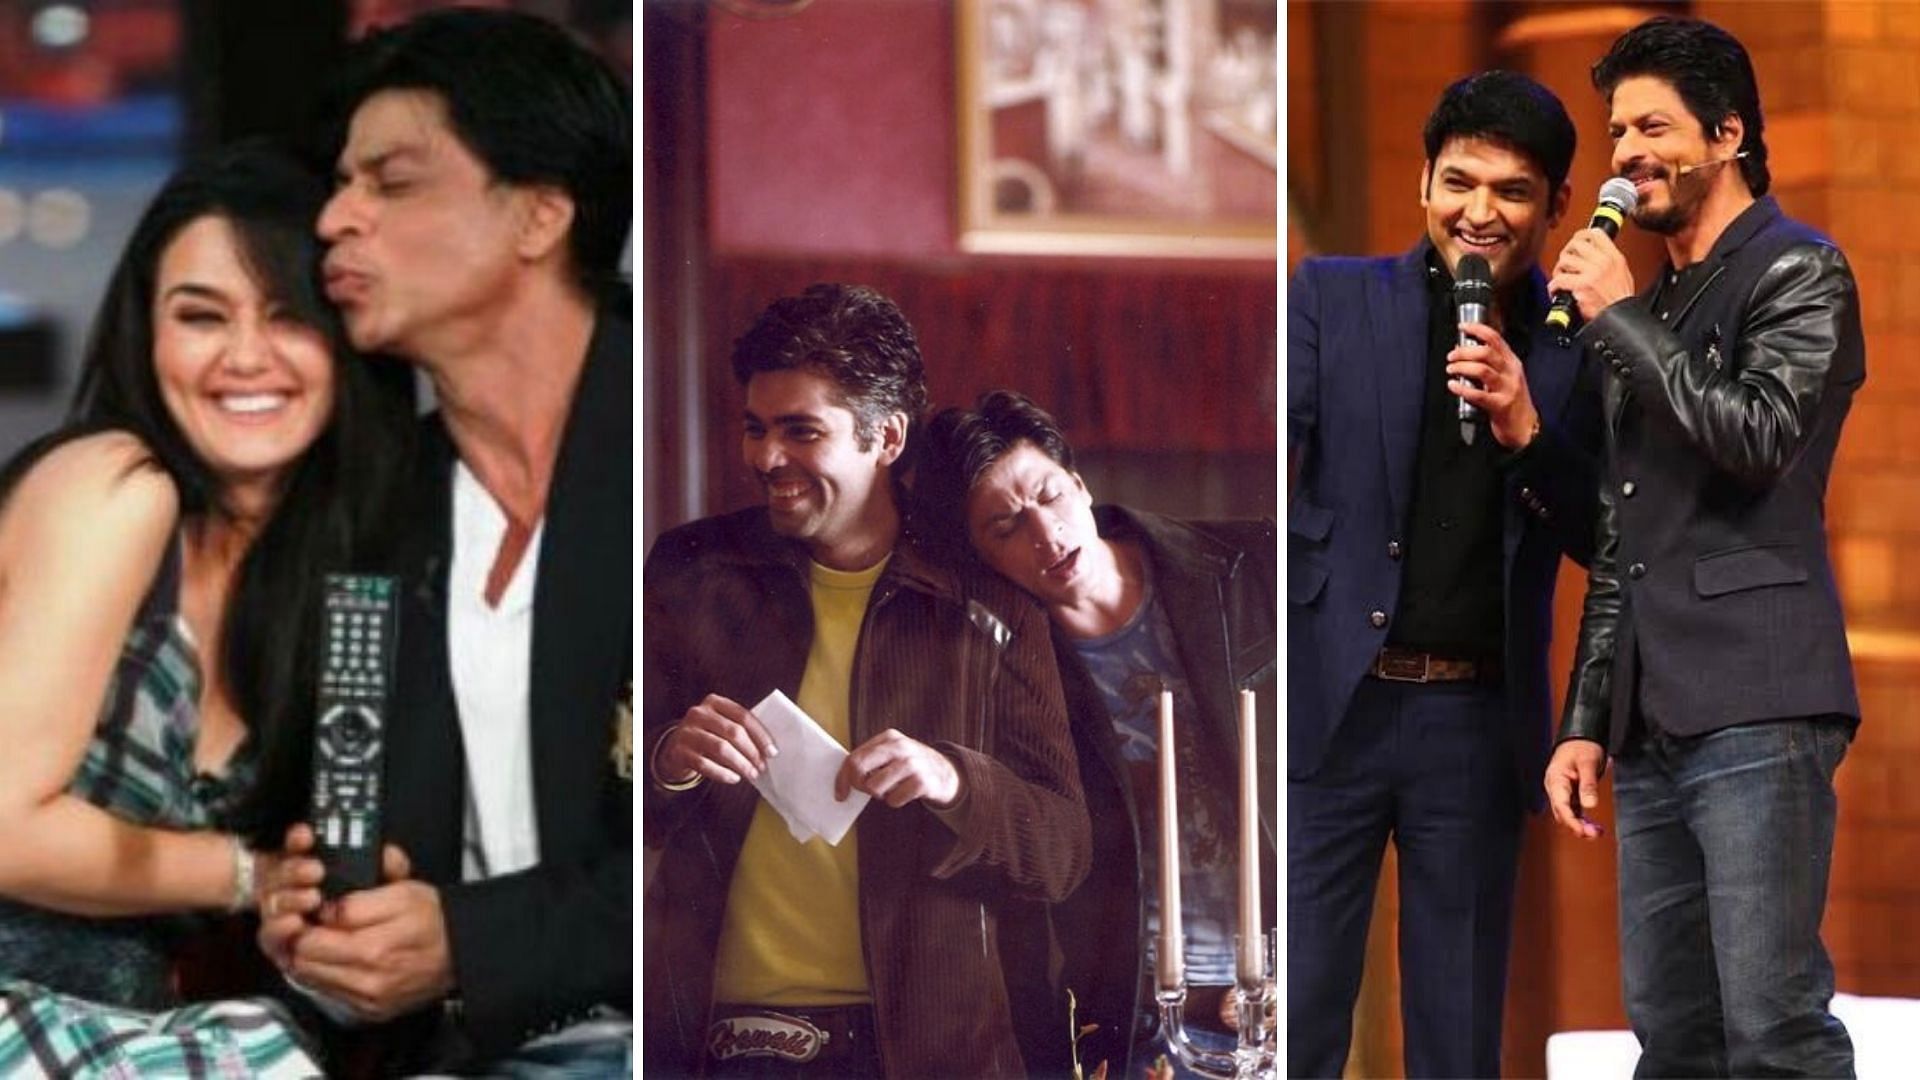 Shah Rukh Khan turns 54 on 2 November 2019.